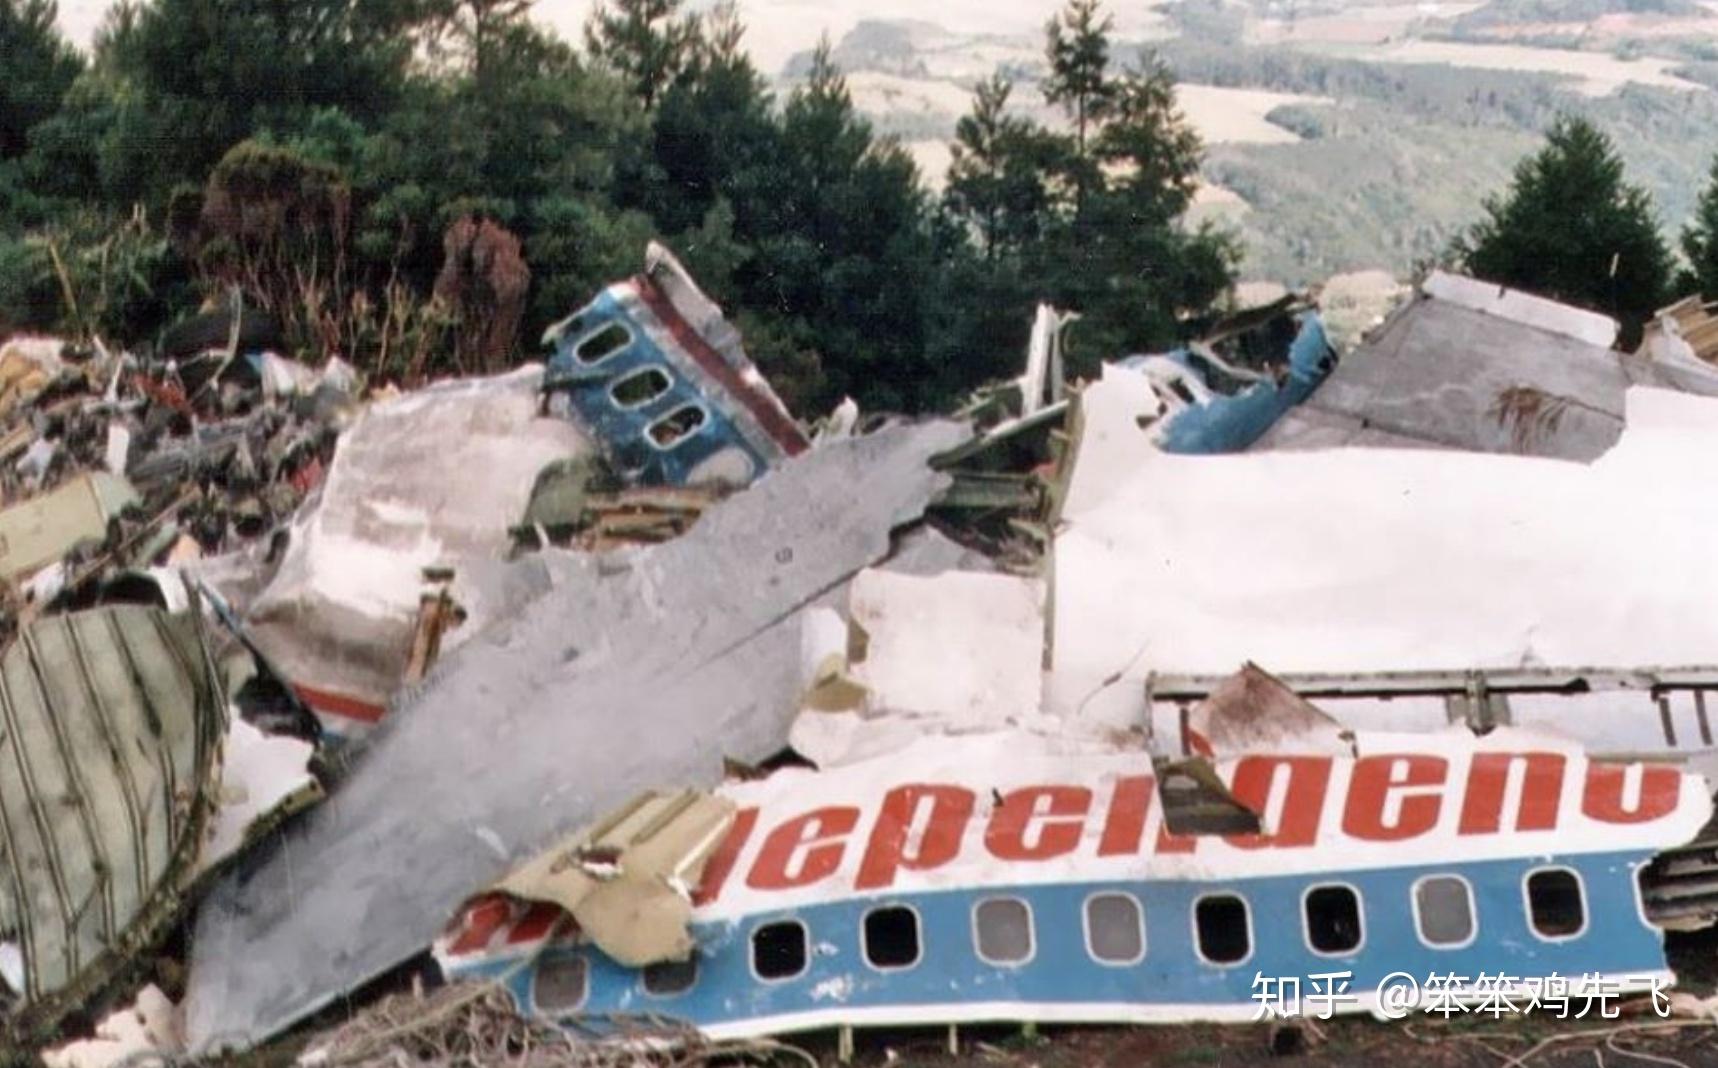 波音707空难图片